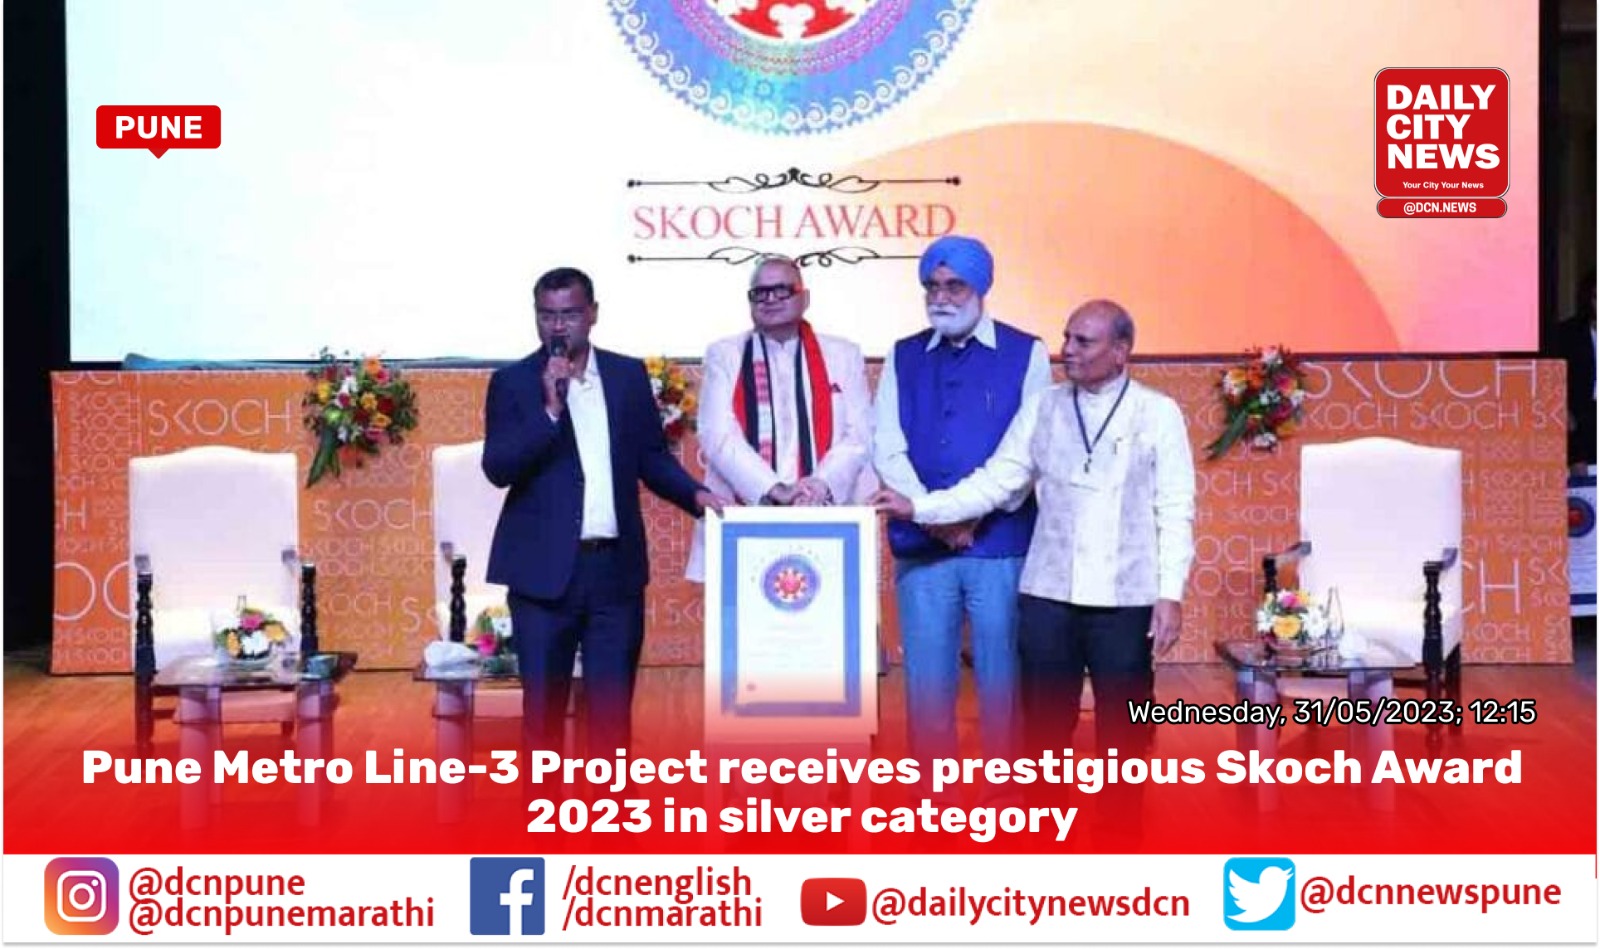  Pune Metro Line-3 Project receives prestigious Skoch Award 2023 in silver category